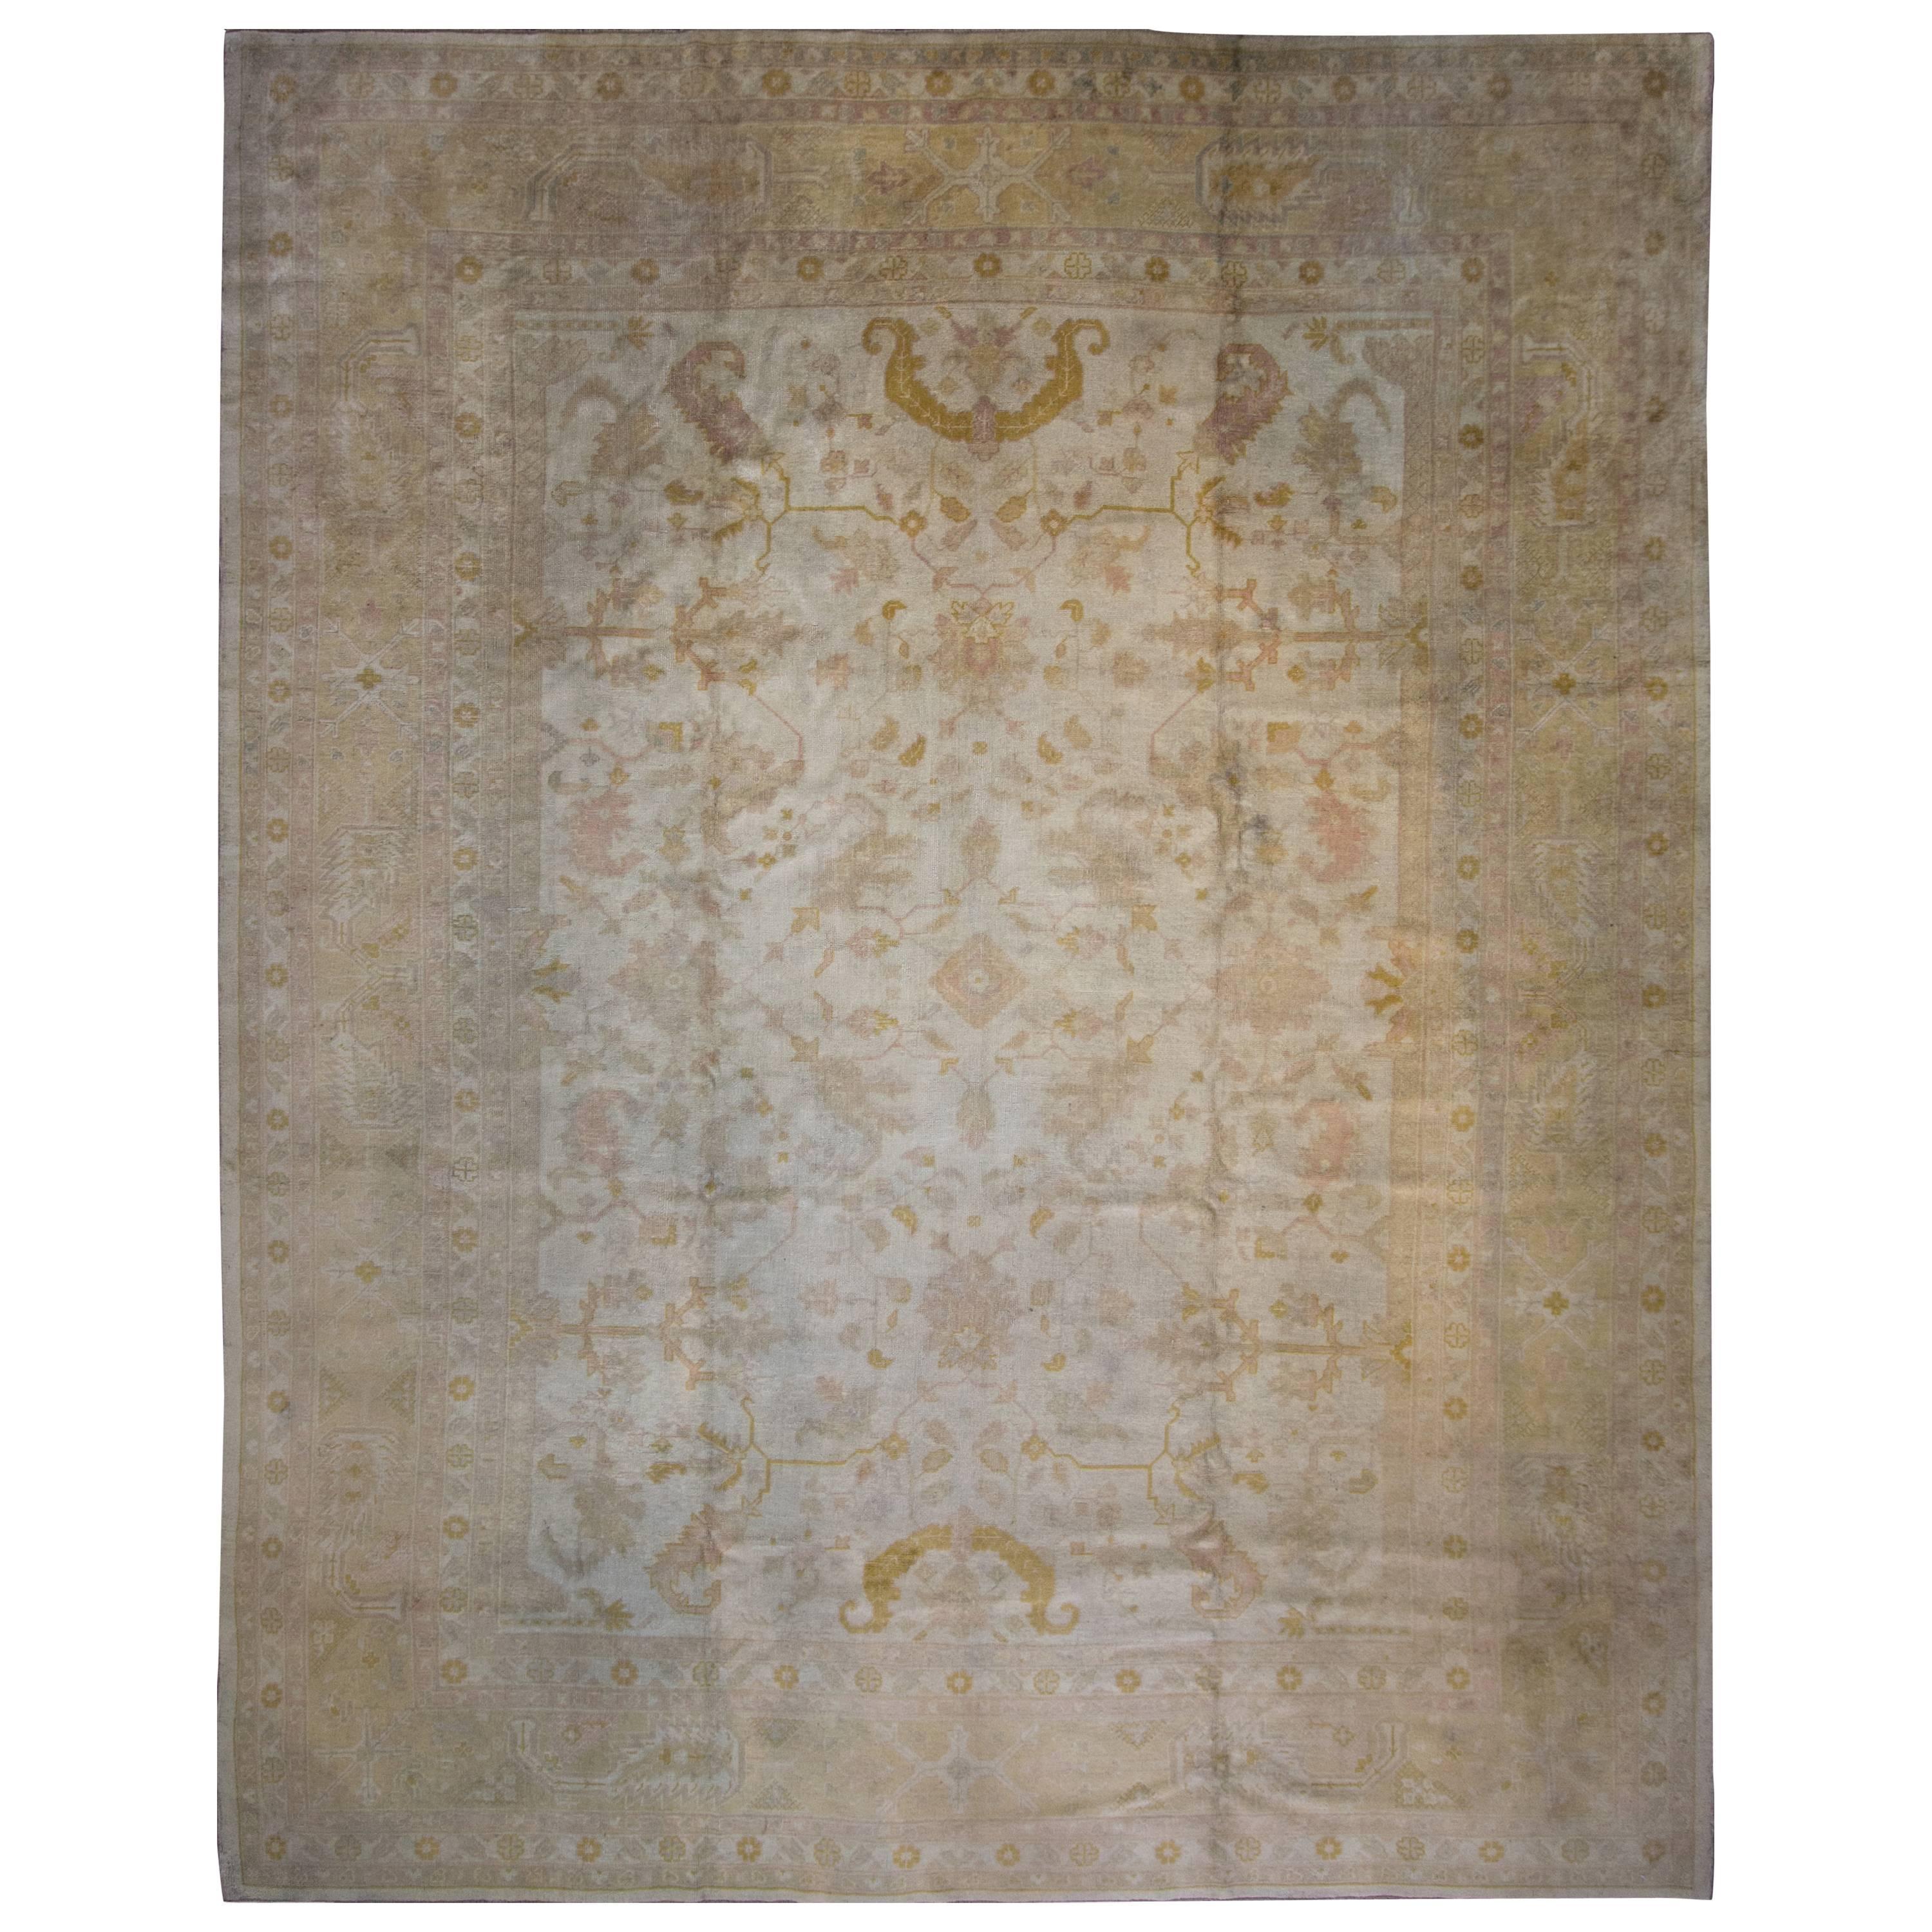 Antique Oushak Carpet, 11'7" 14'8"